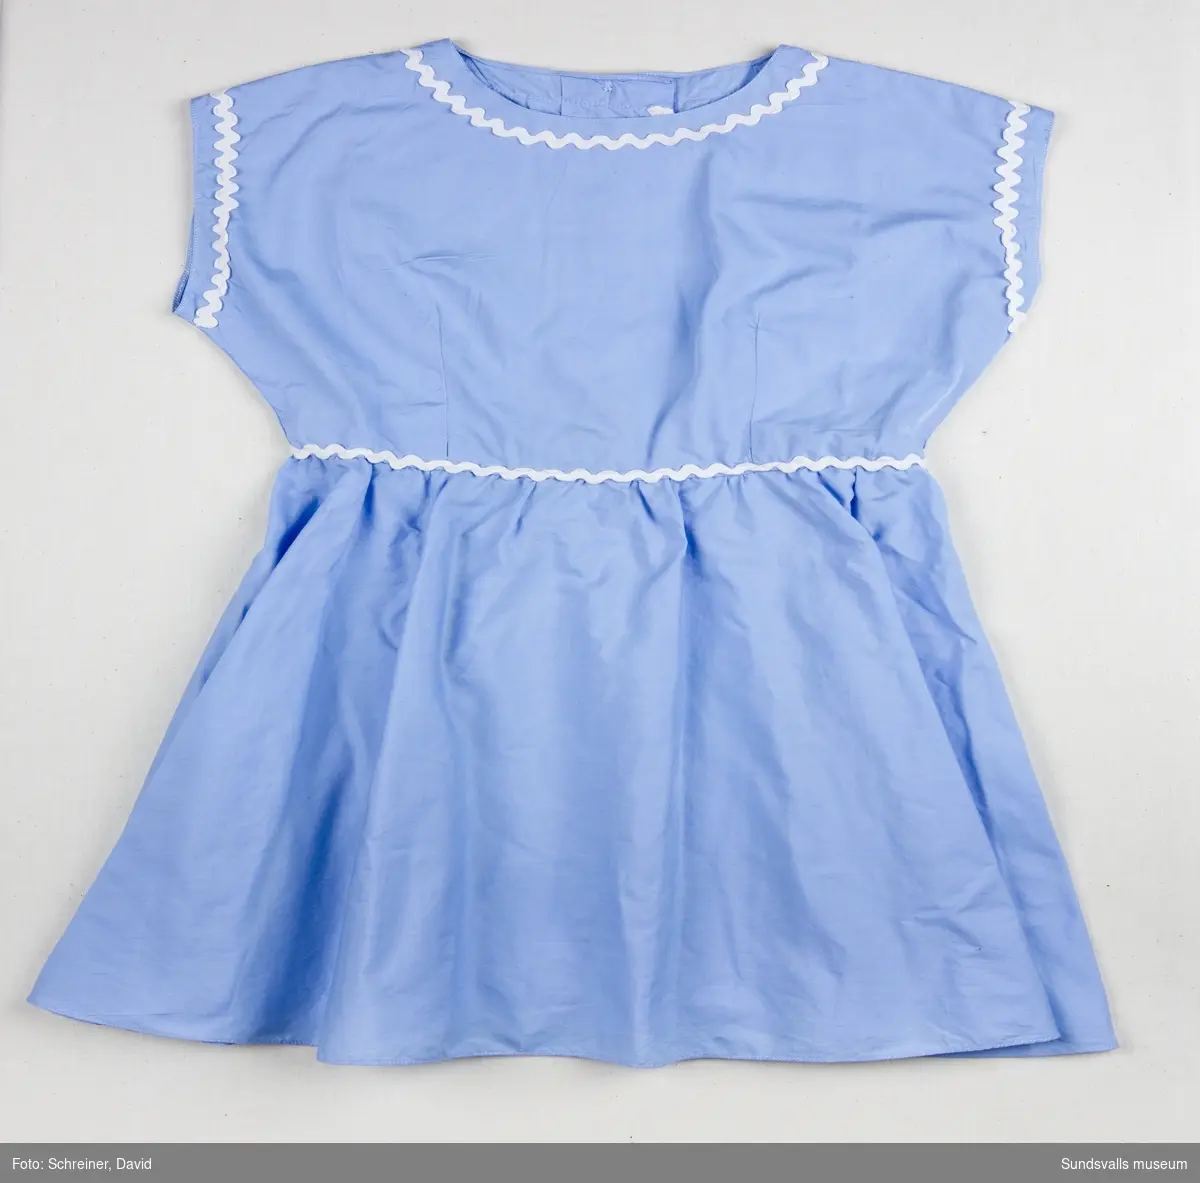 En ljusblå ärmlös klänning med utsmyckning runt ärmhål, halsrundning och midja med vitt dekorband.